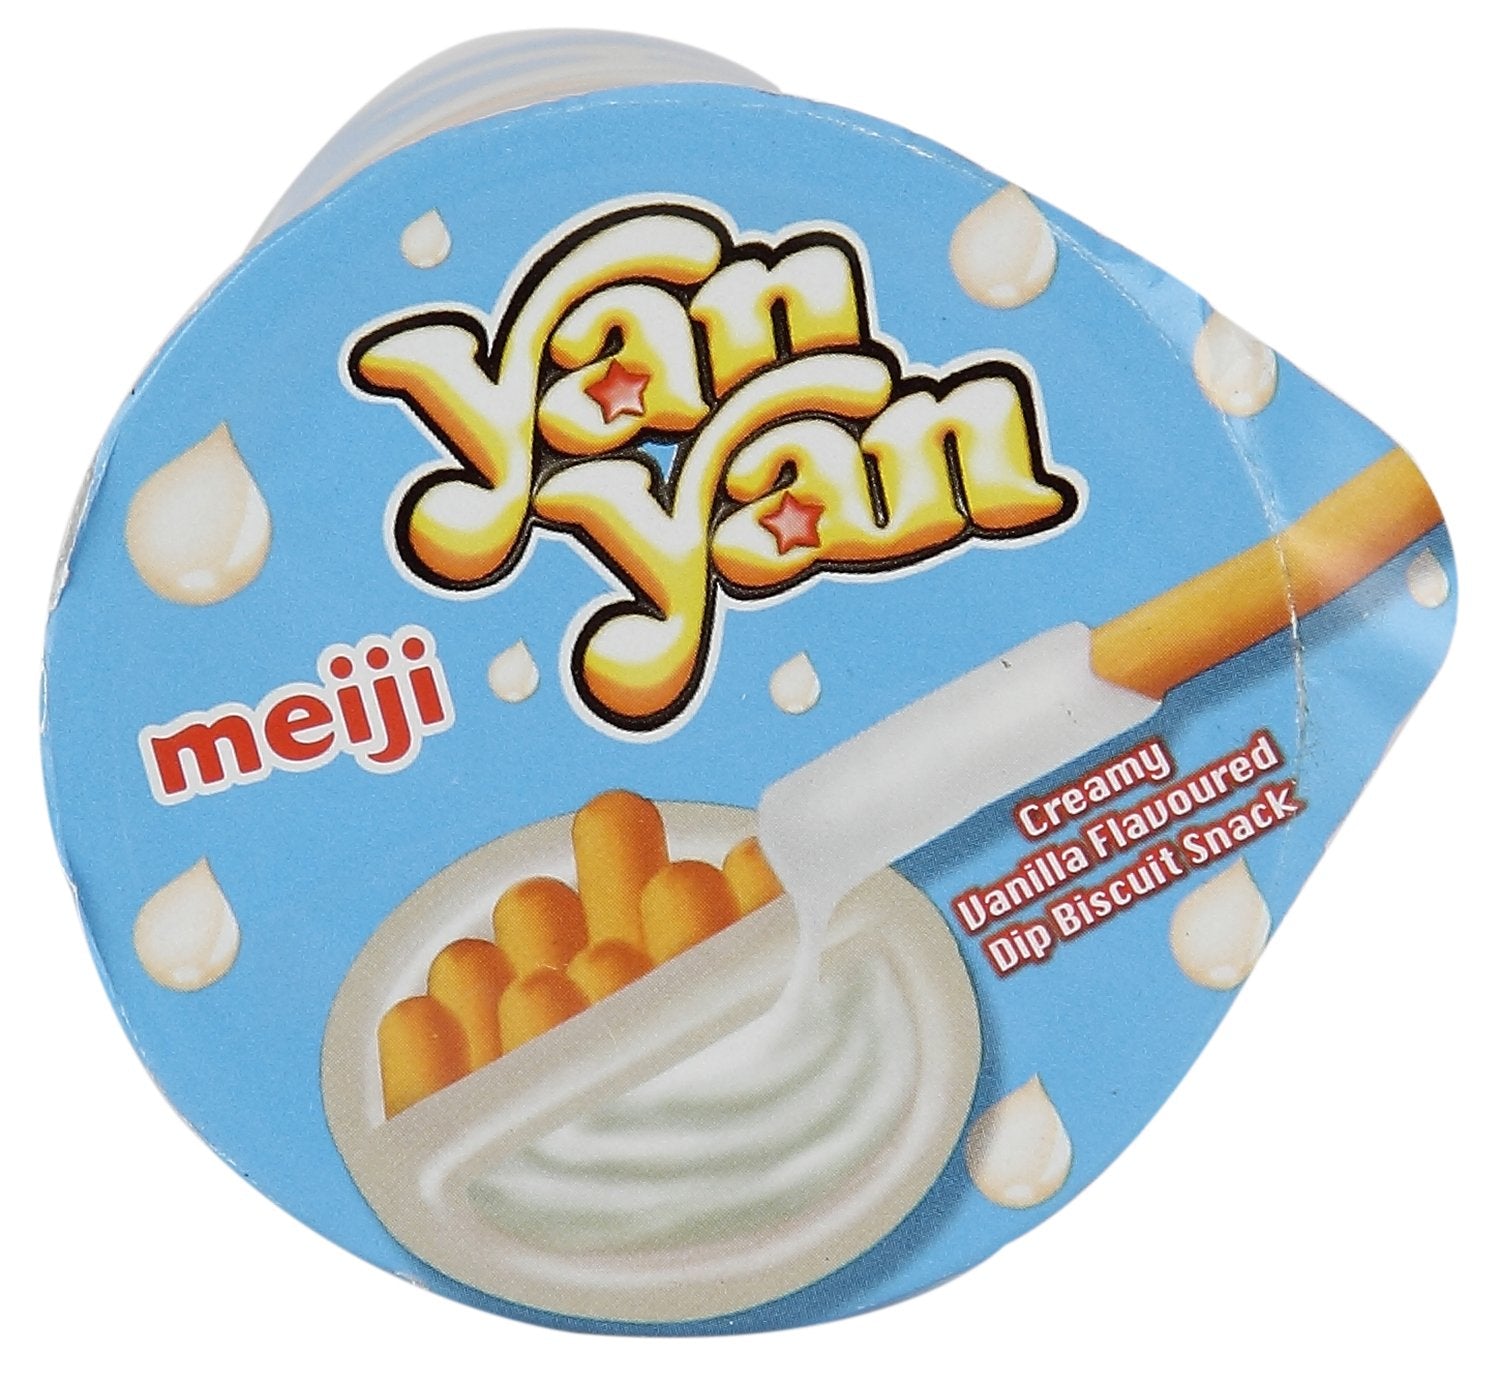 Meiji, Yan Yan Chocolate Sticks, 2 Oz